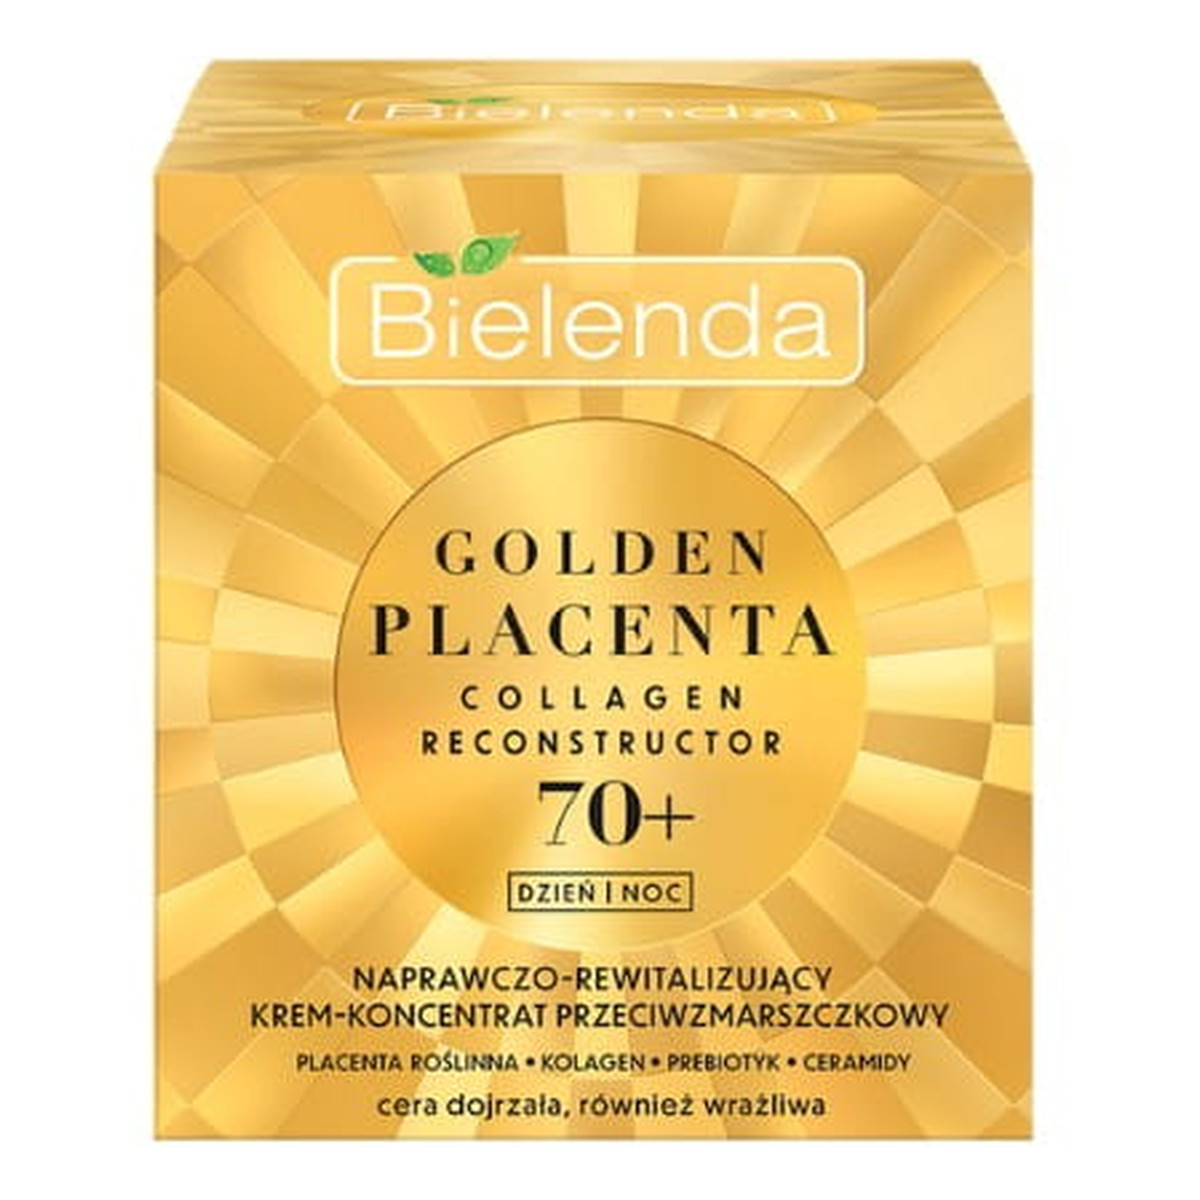 Bielenda Golden Placenta Naprawczo - Rewitalizujący Krem-koncentrat przeciwzmarszczkowy na dzień i noc 70+ 50ml